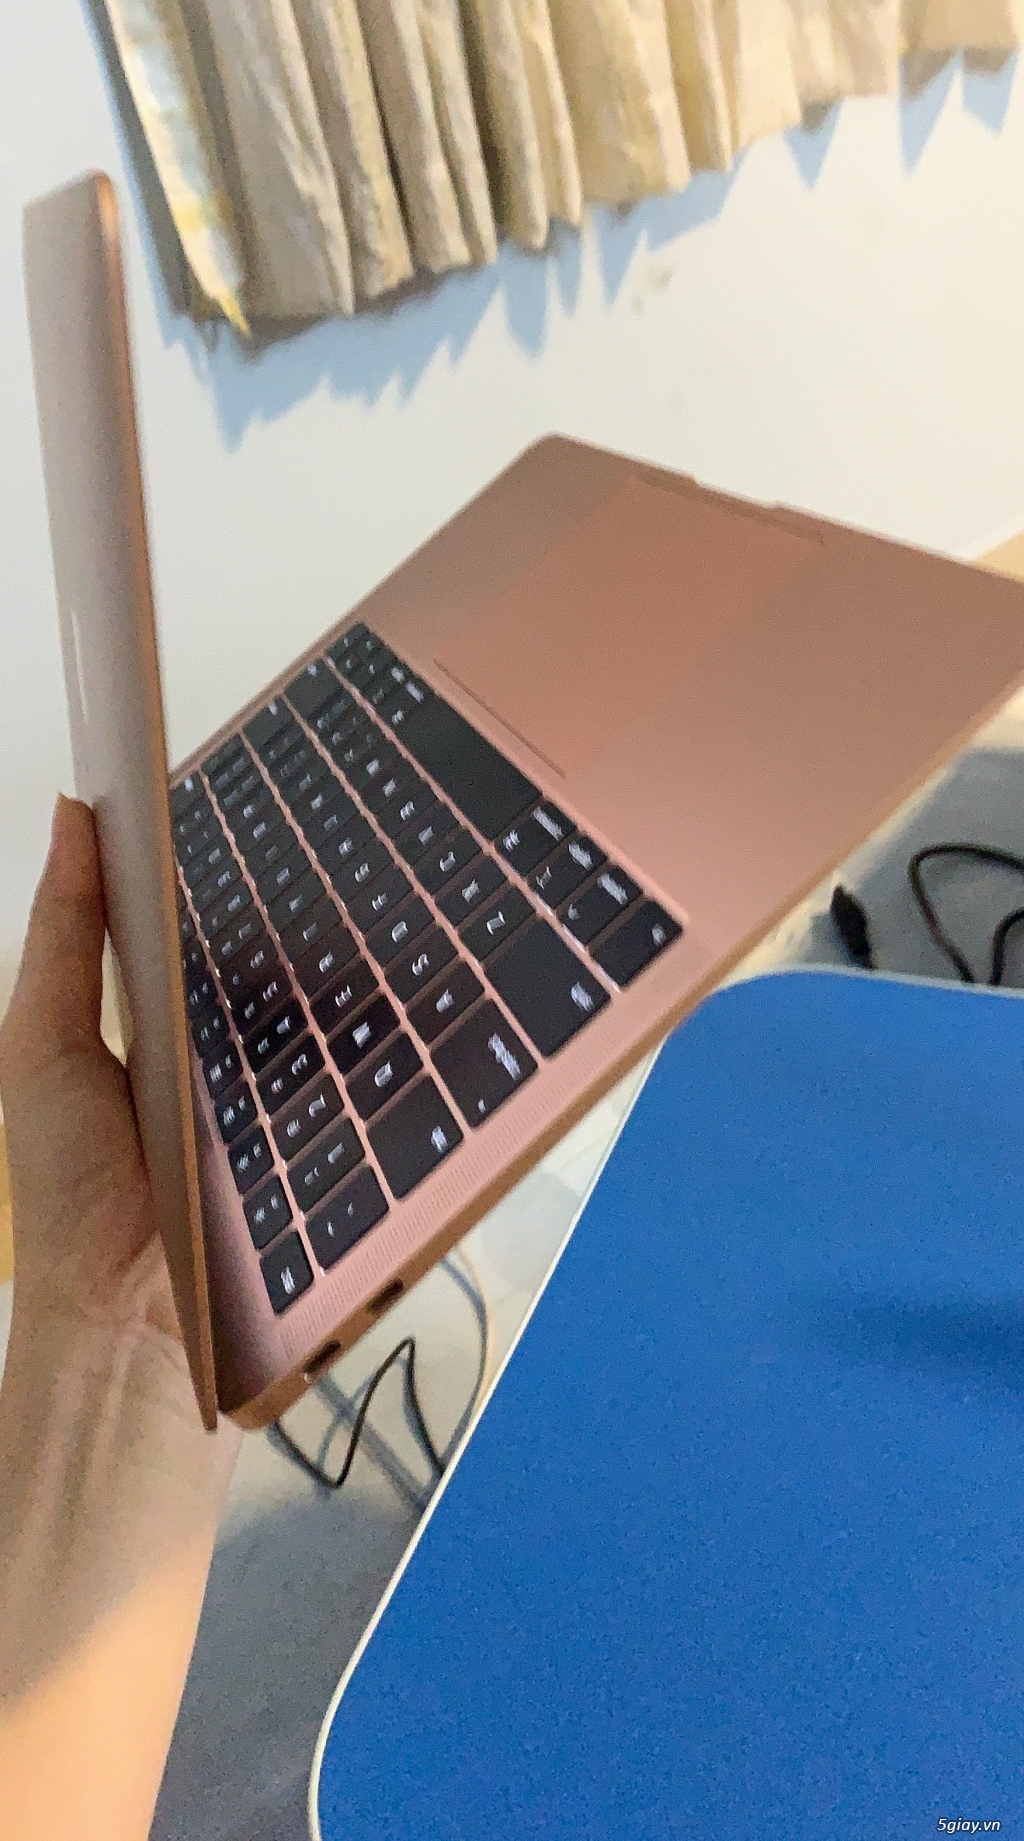 MacBook Air Retina 13 inch 2019 Core i5 RAM 8GB Macintosh HD - 1